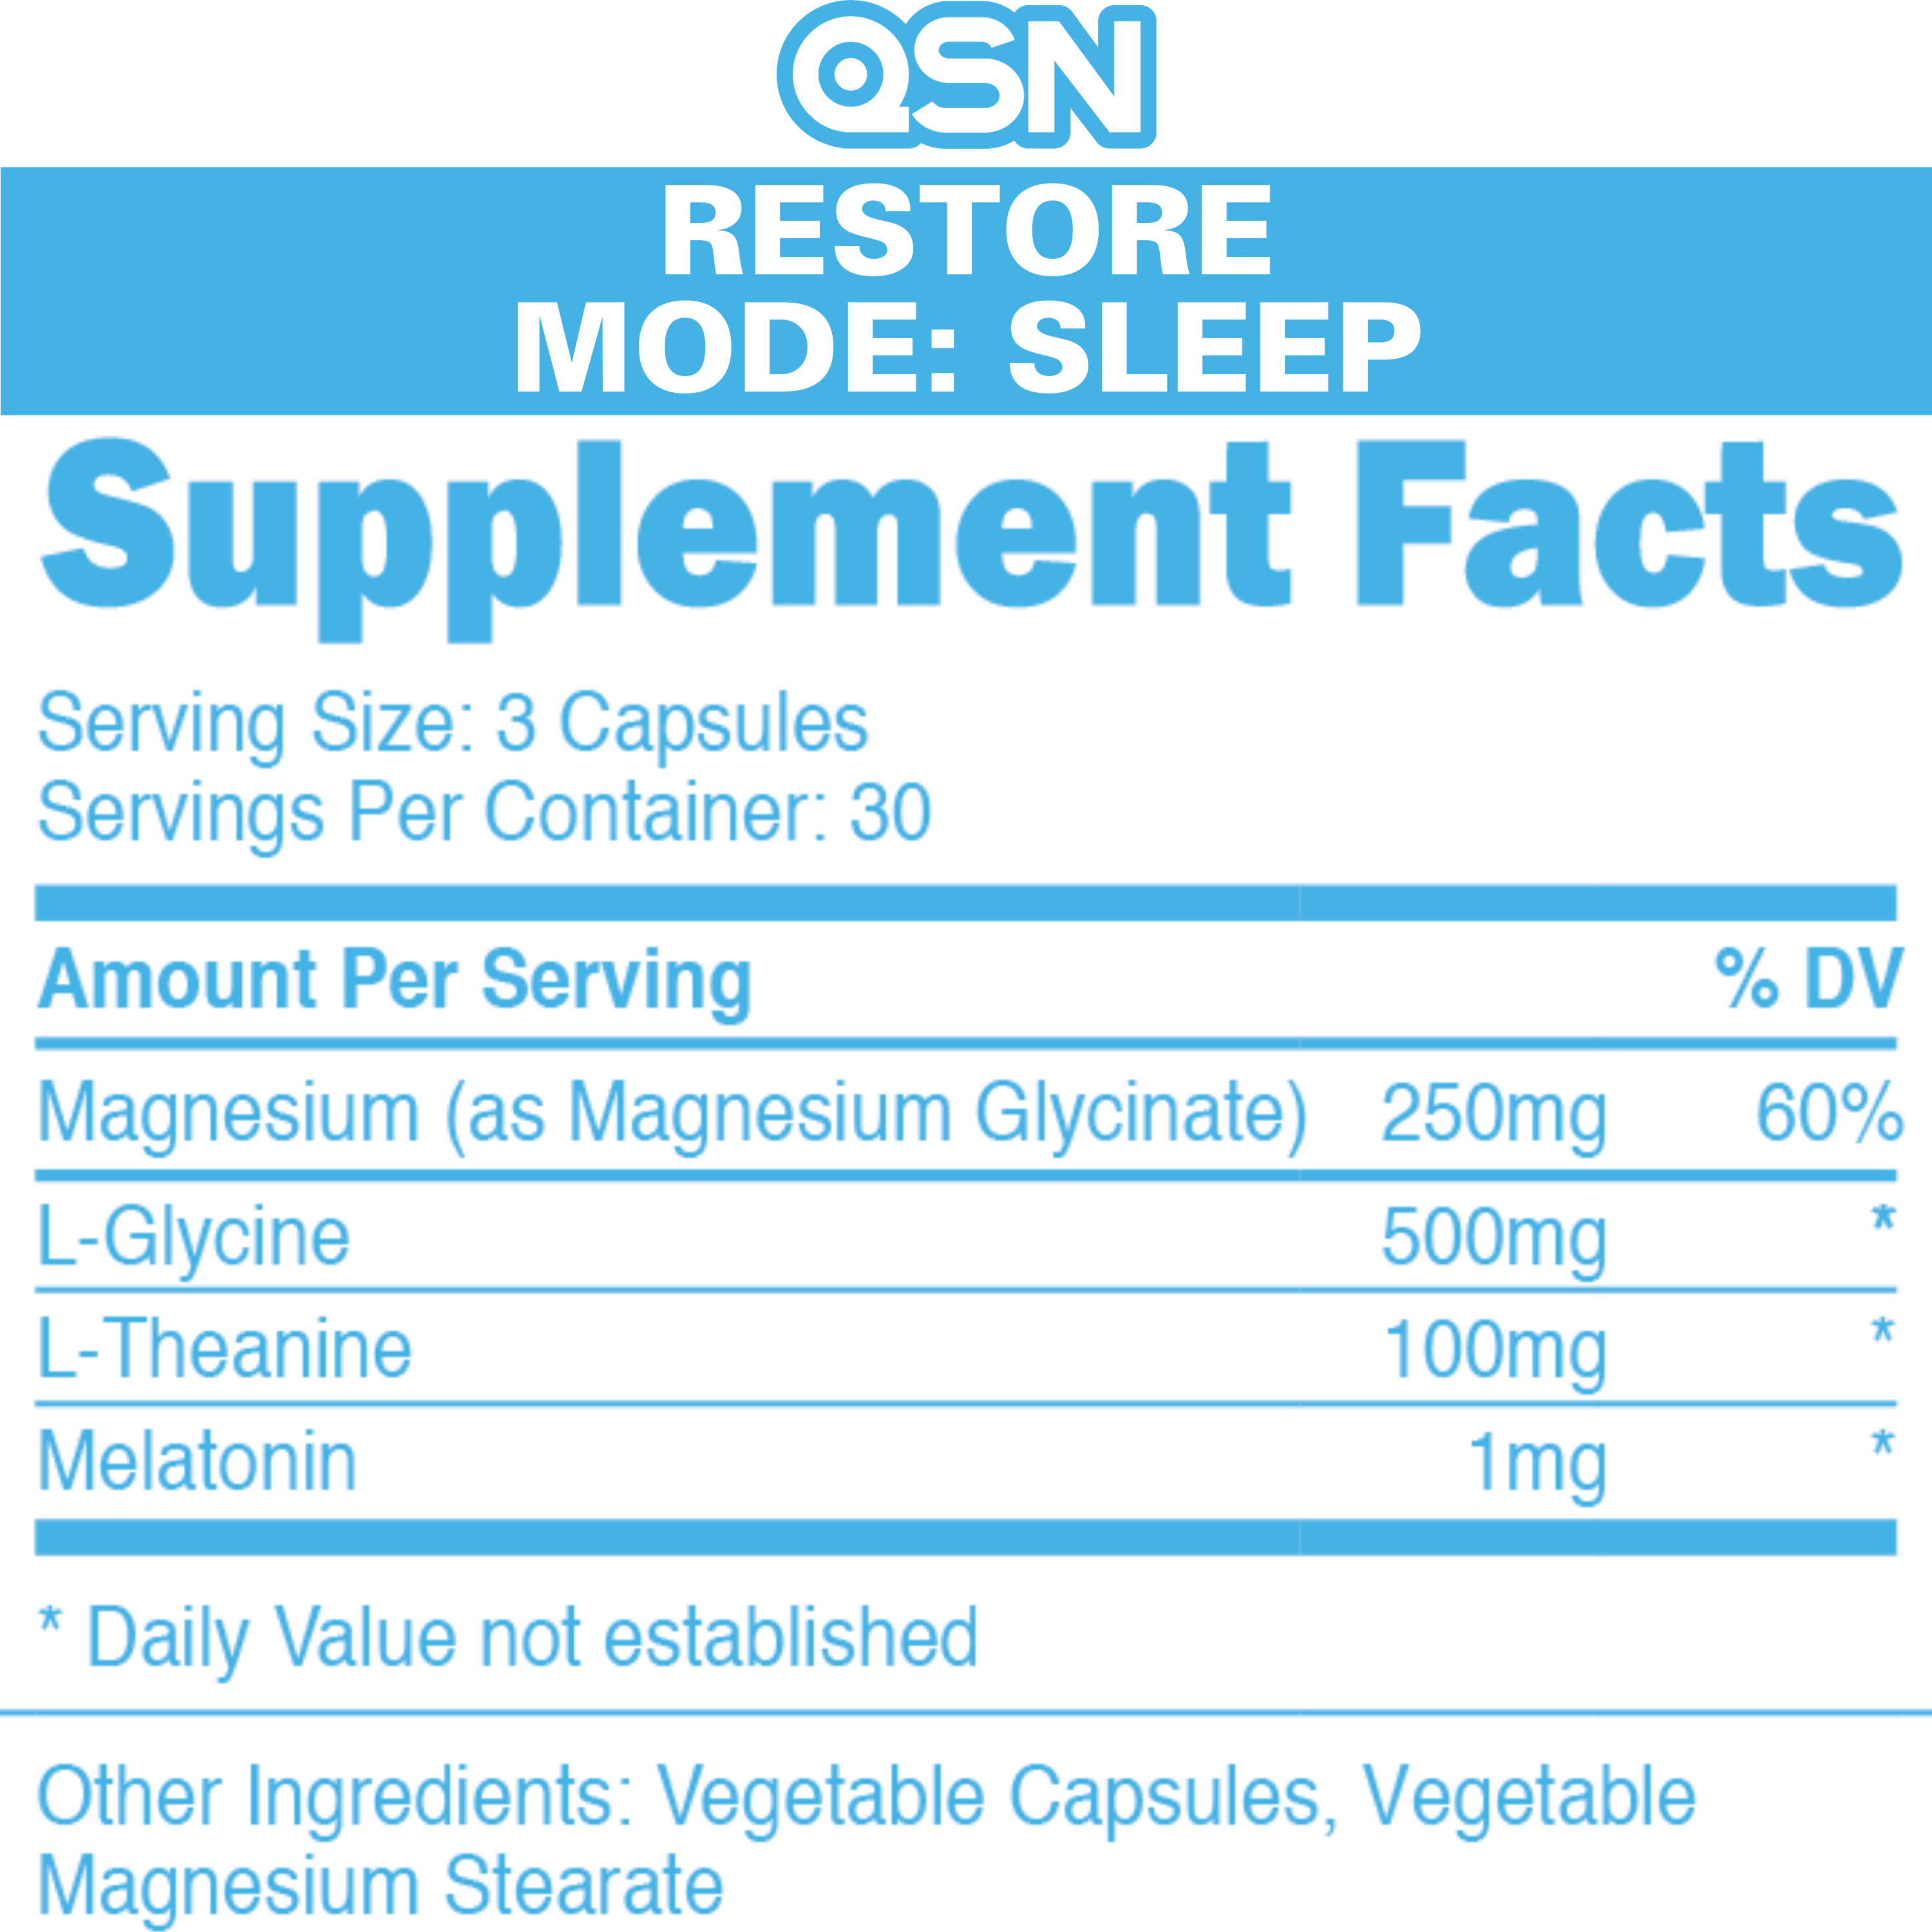 QSN Restore Supplement Facts